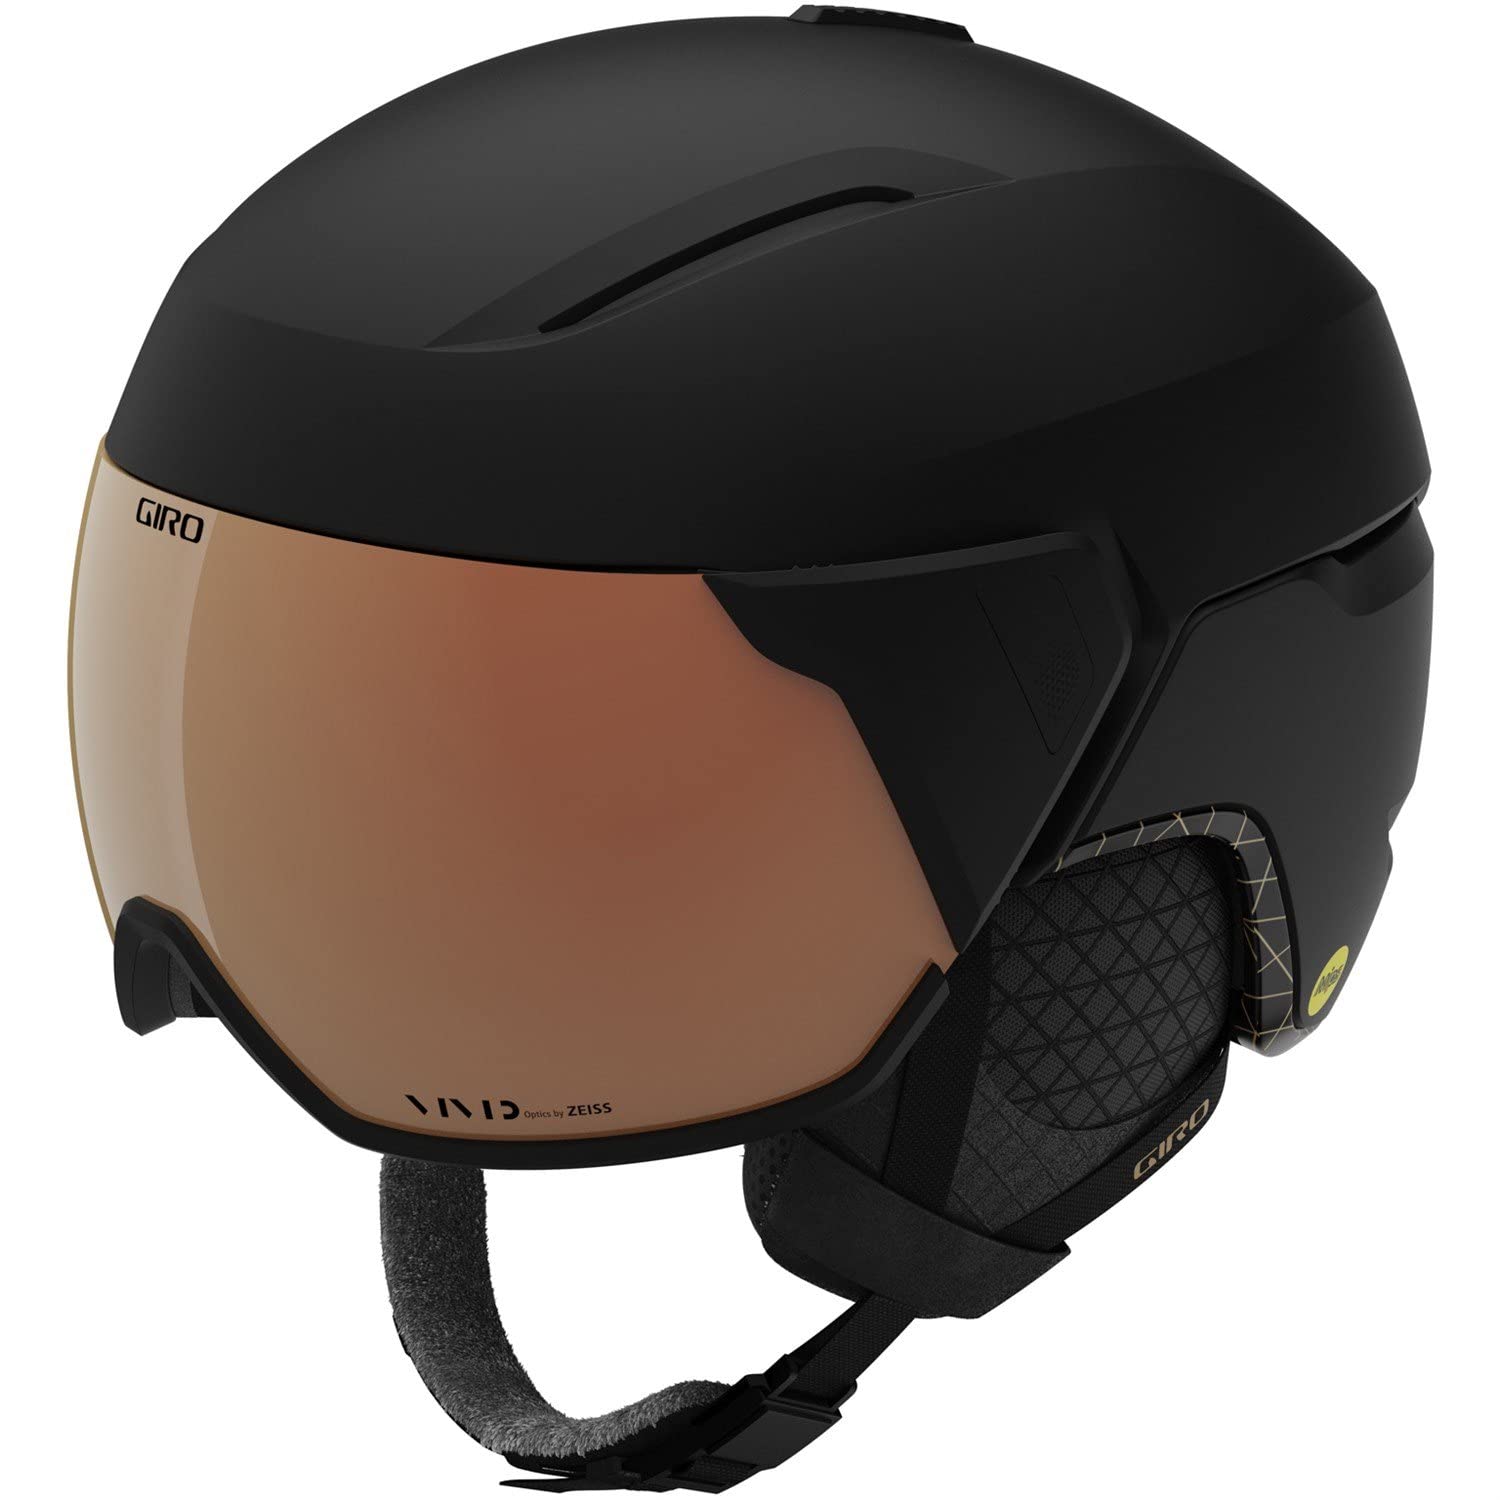 Giro Aria Spherical MIPS Ski Helmet - Snowboarding Helmet for Women with Integrated Visor - Matte Black - S 52-55.5cm並行